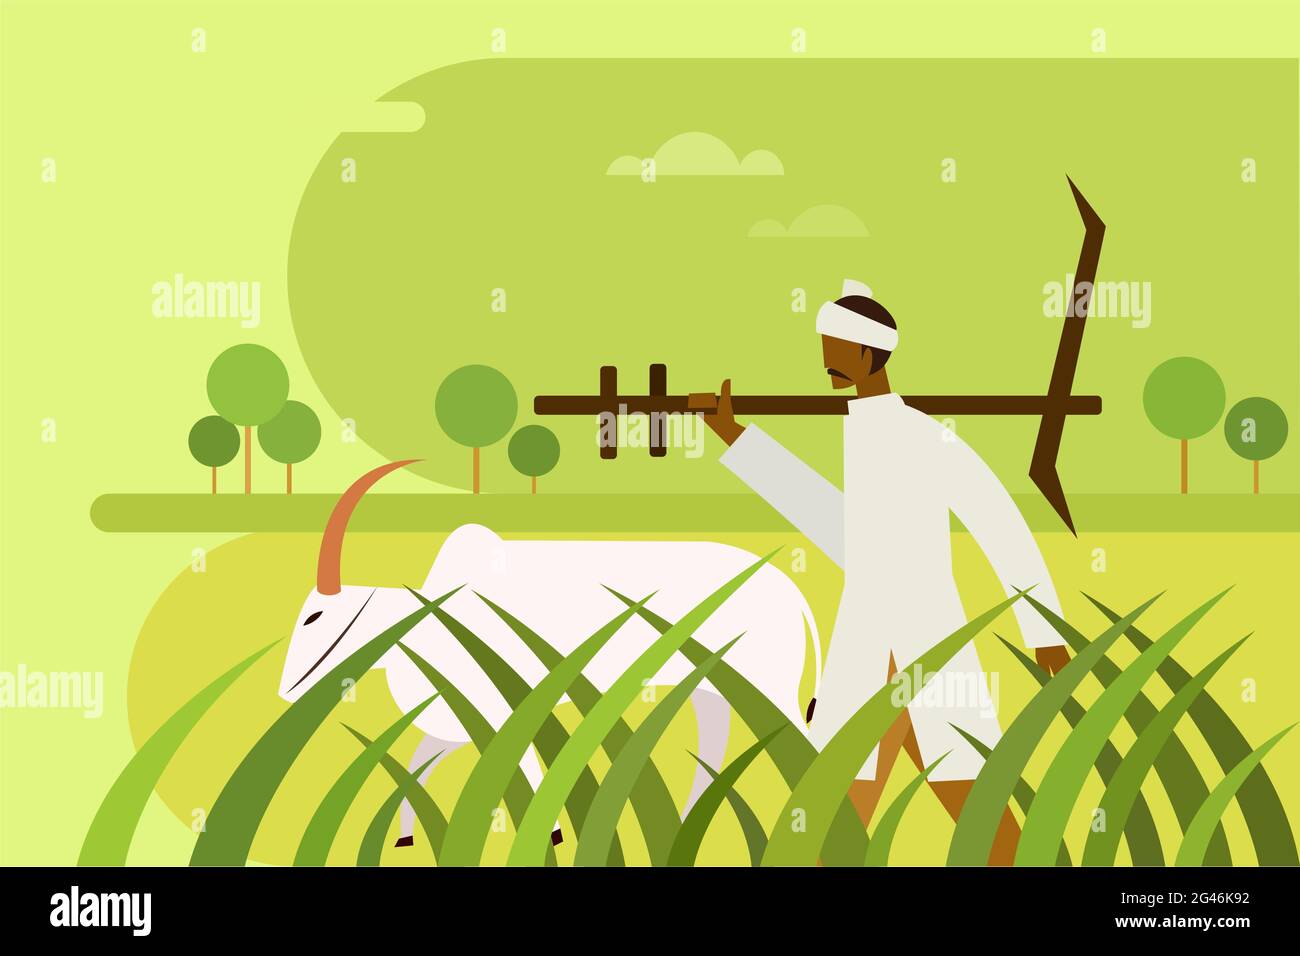 Der Bauer mit einem Pflug geht mit einem Farmer durch das landwirtschaftliche Feld Stock Vektor